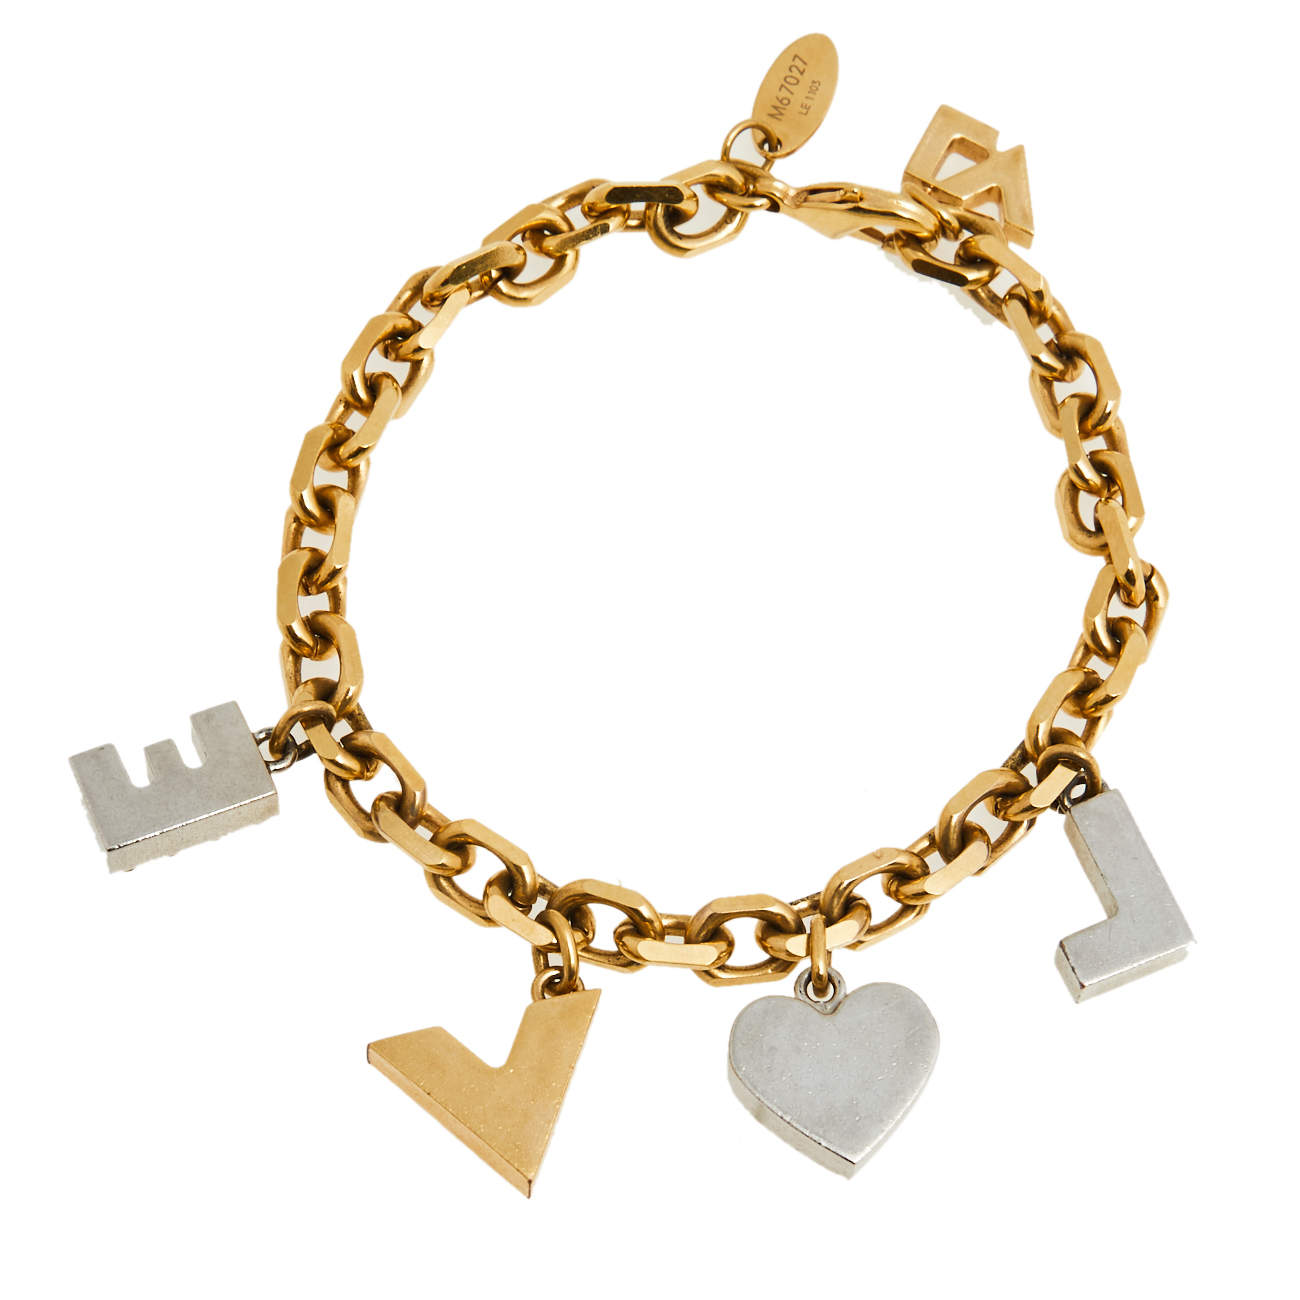 Louis Vuitton Gold Tone Studded Love Charm Bracelet